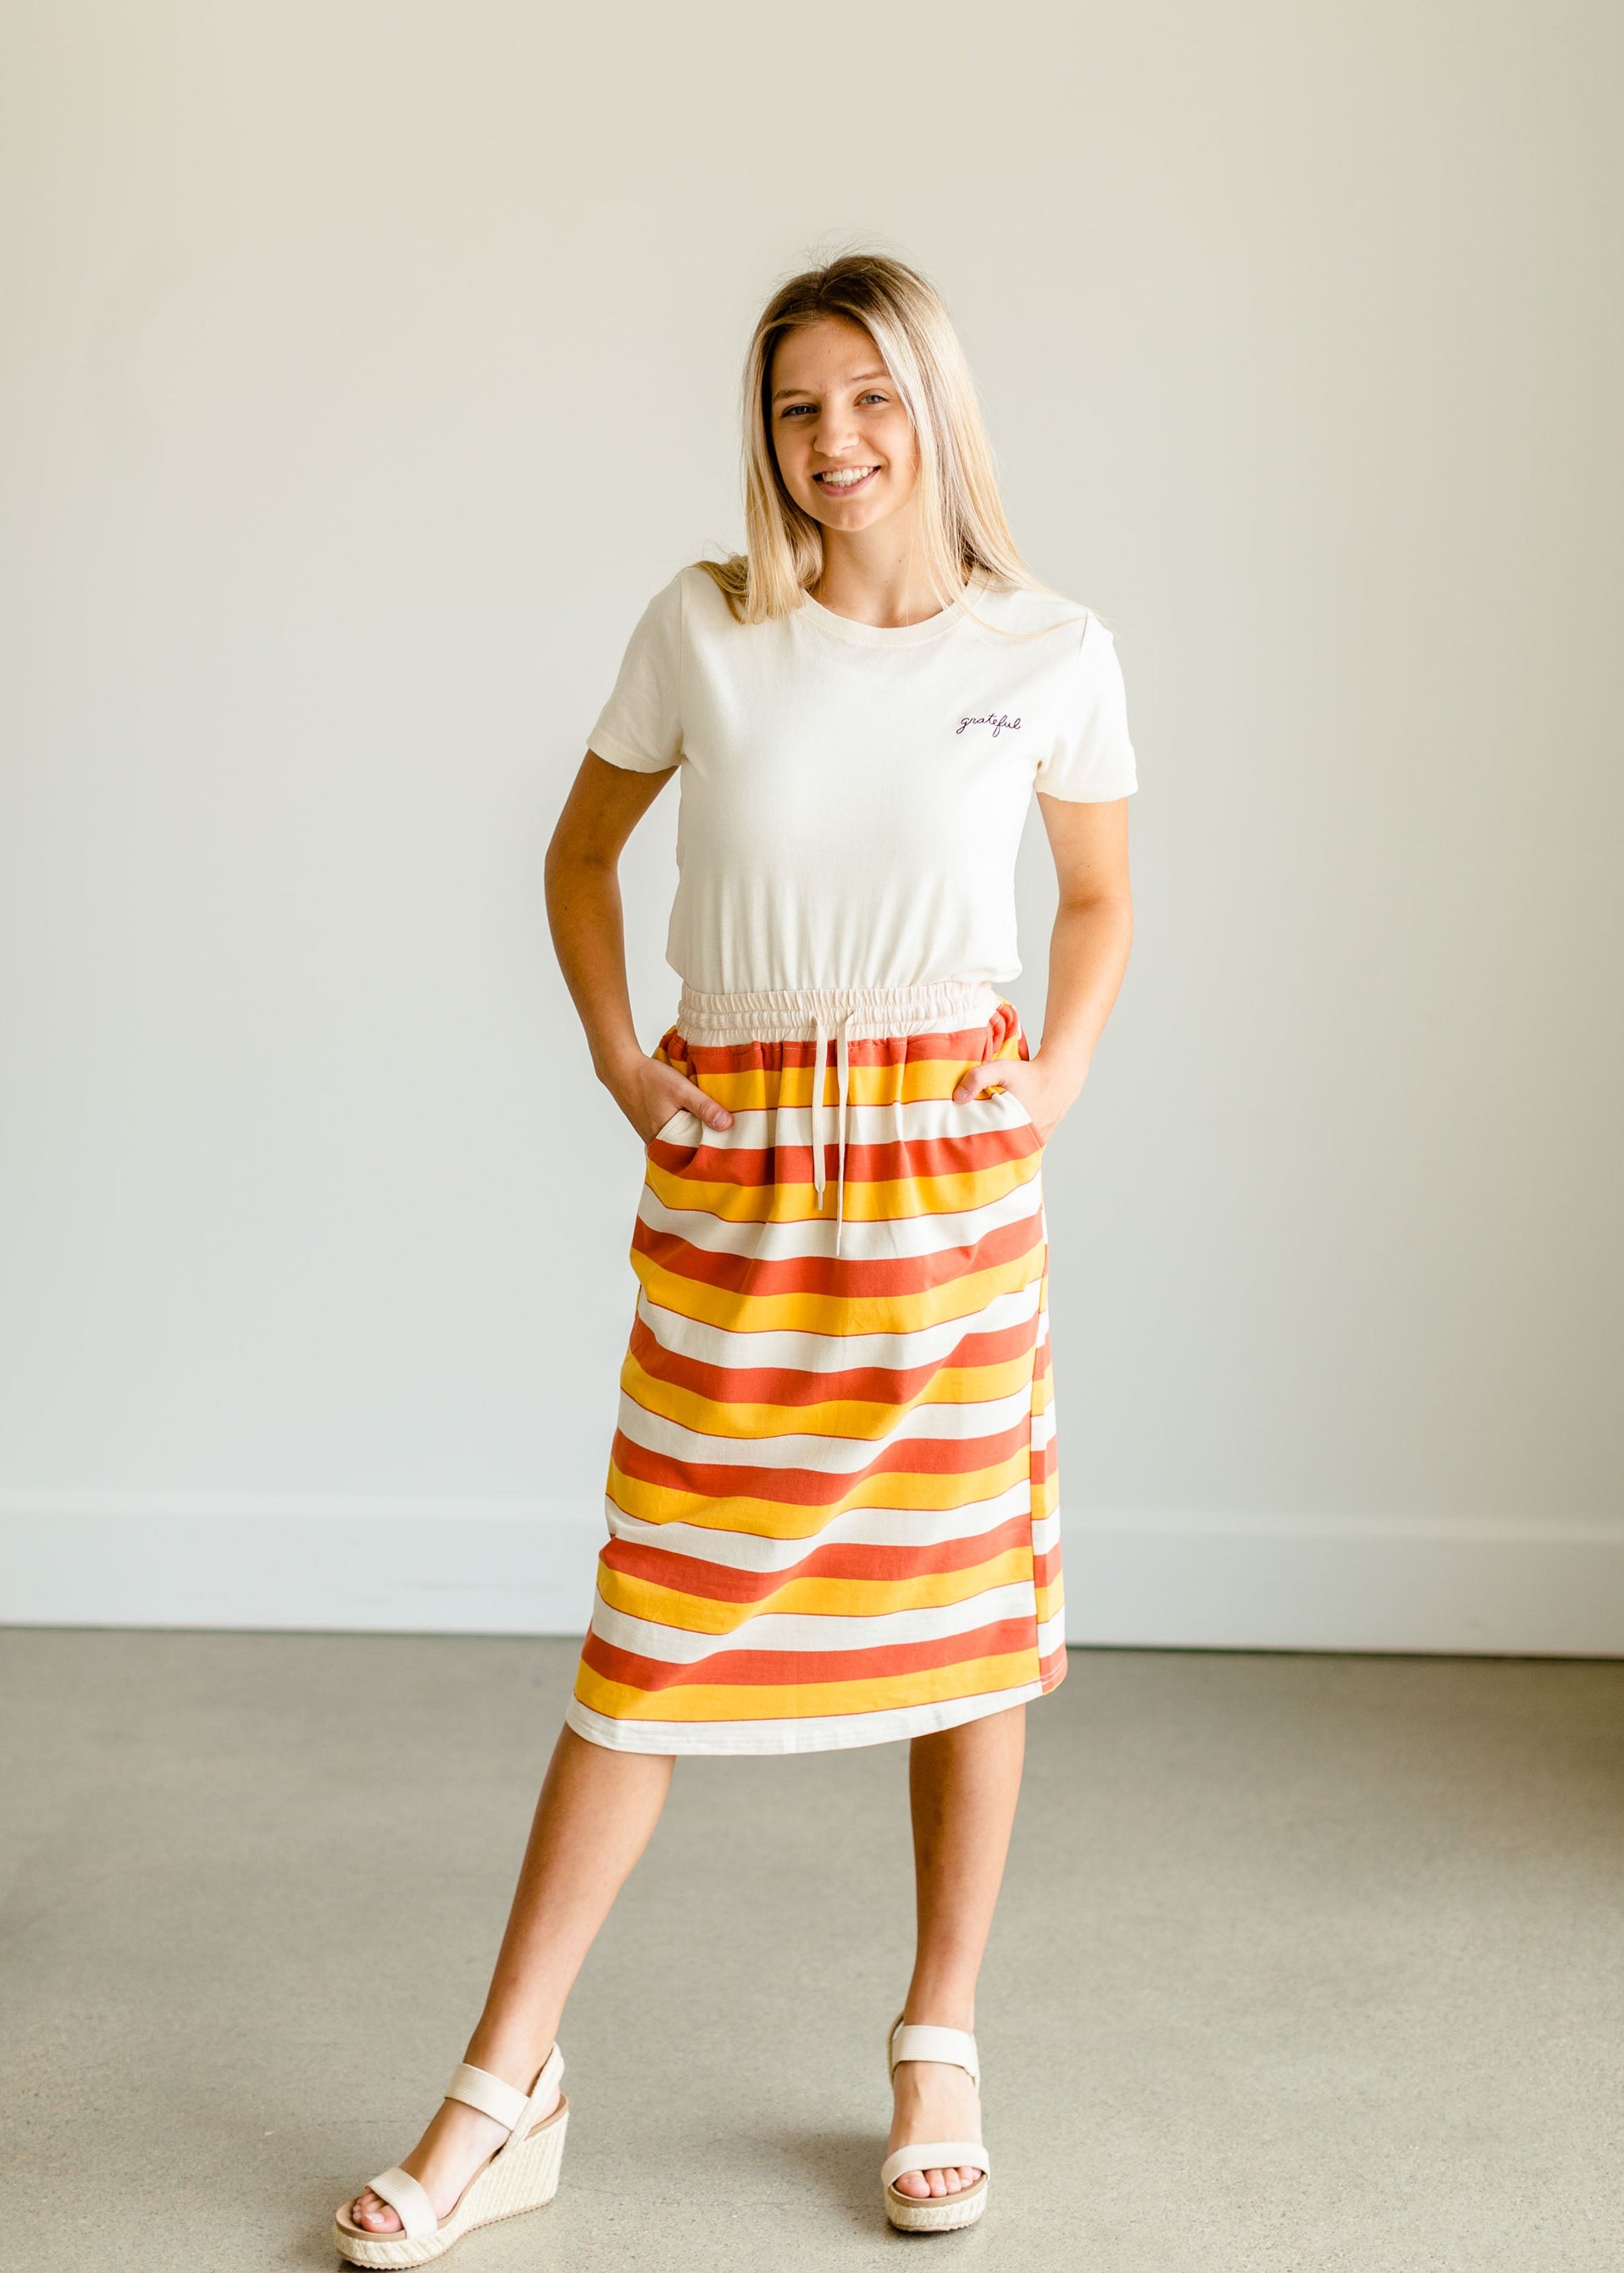 Robyn Striped Drawstring Midi Skirt - FINAL SALE IC Skirts